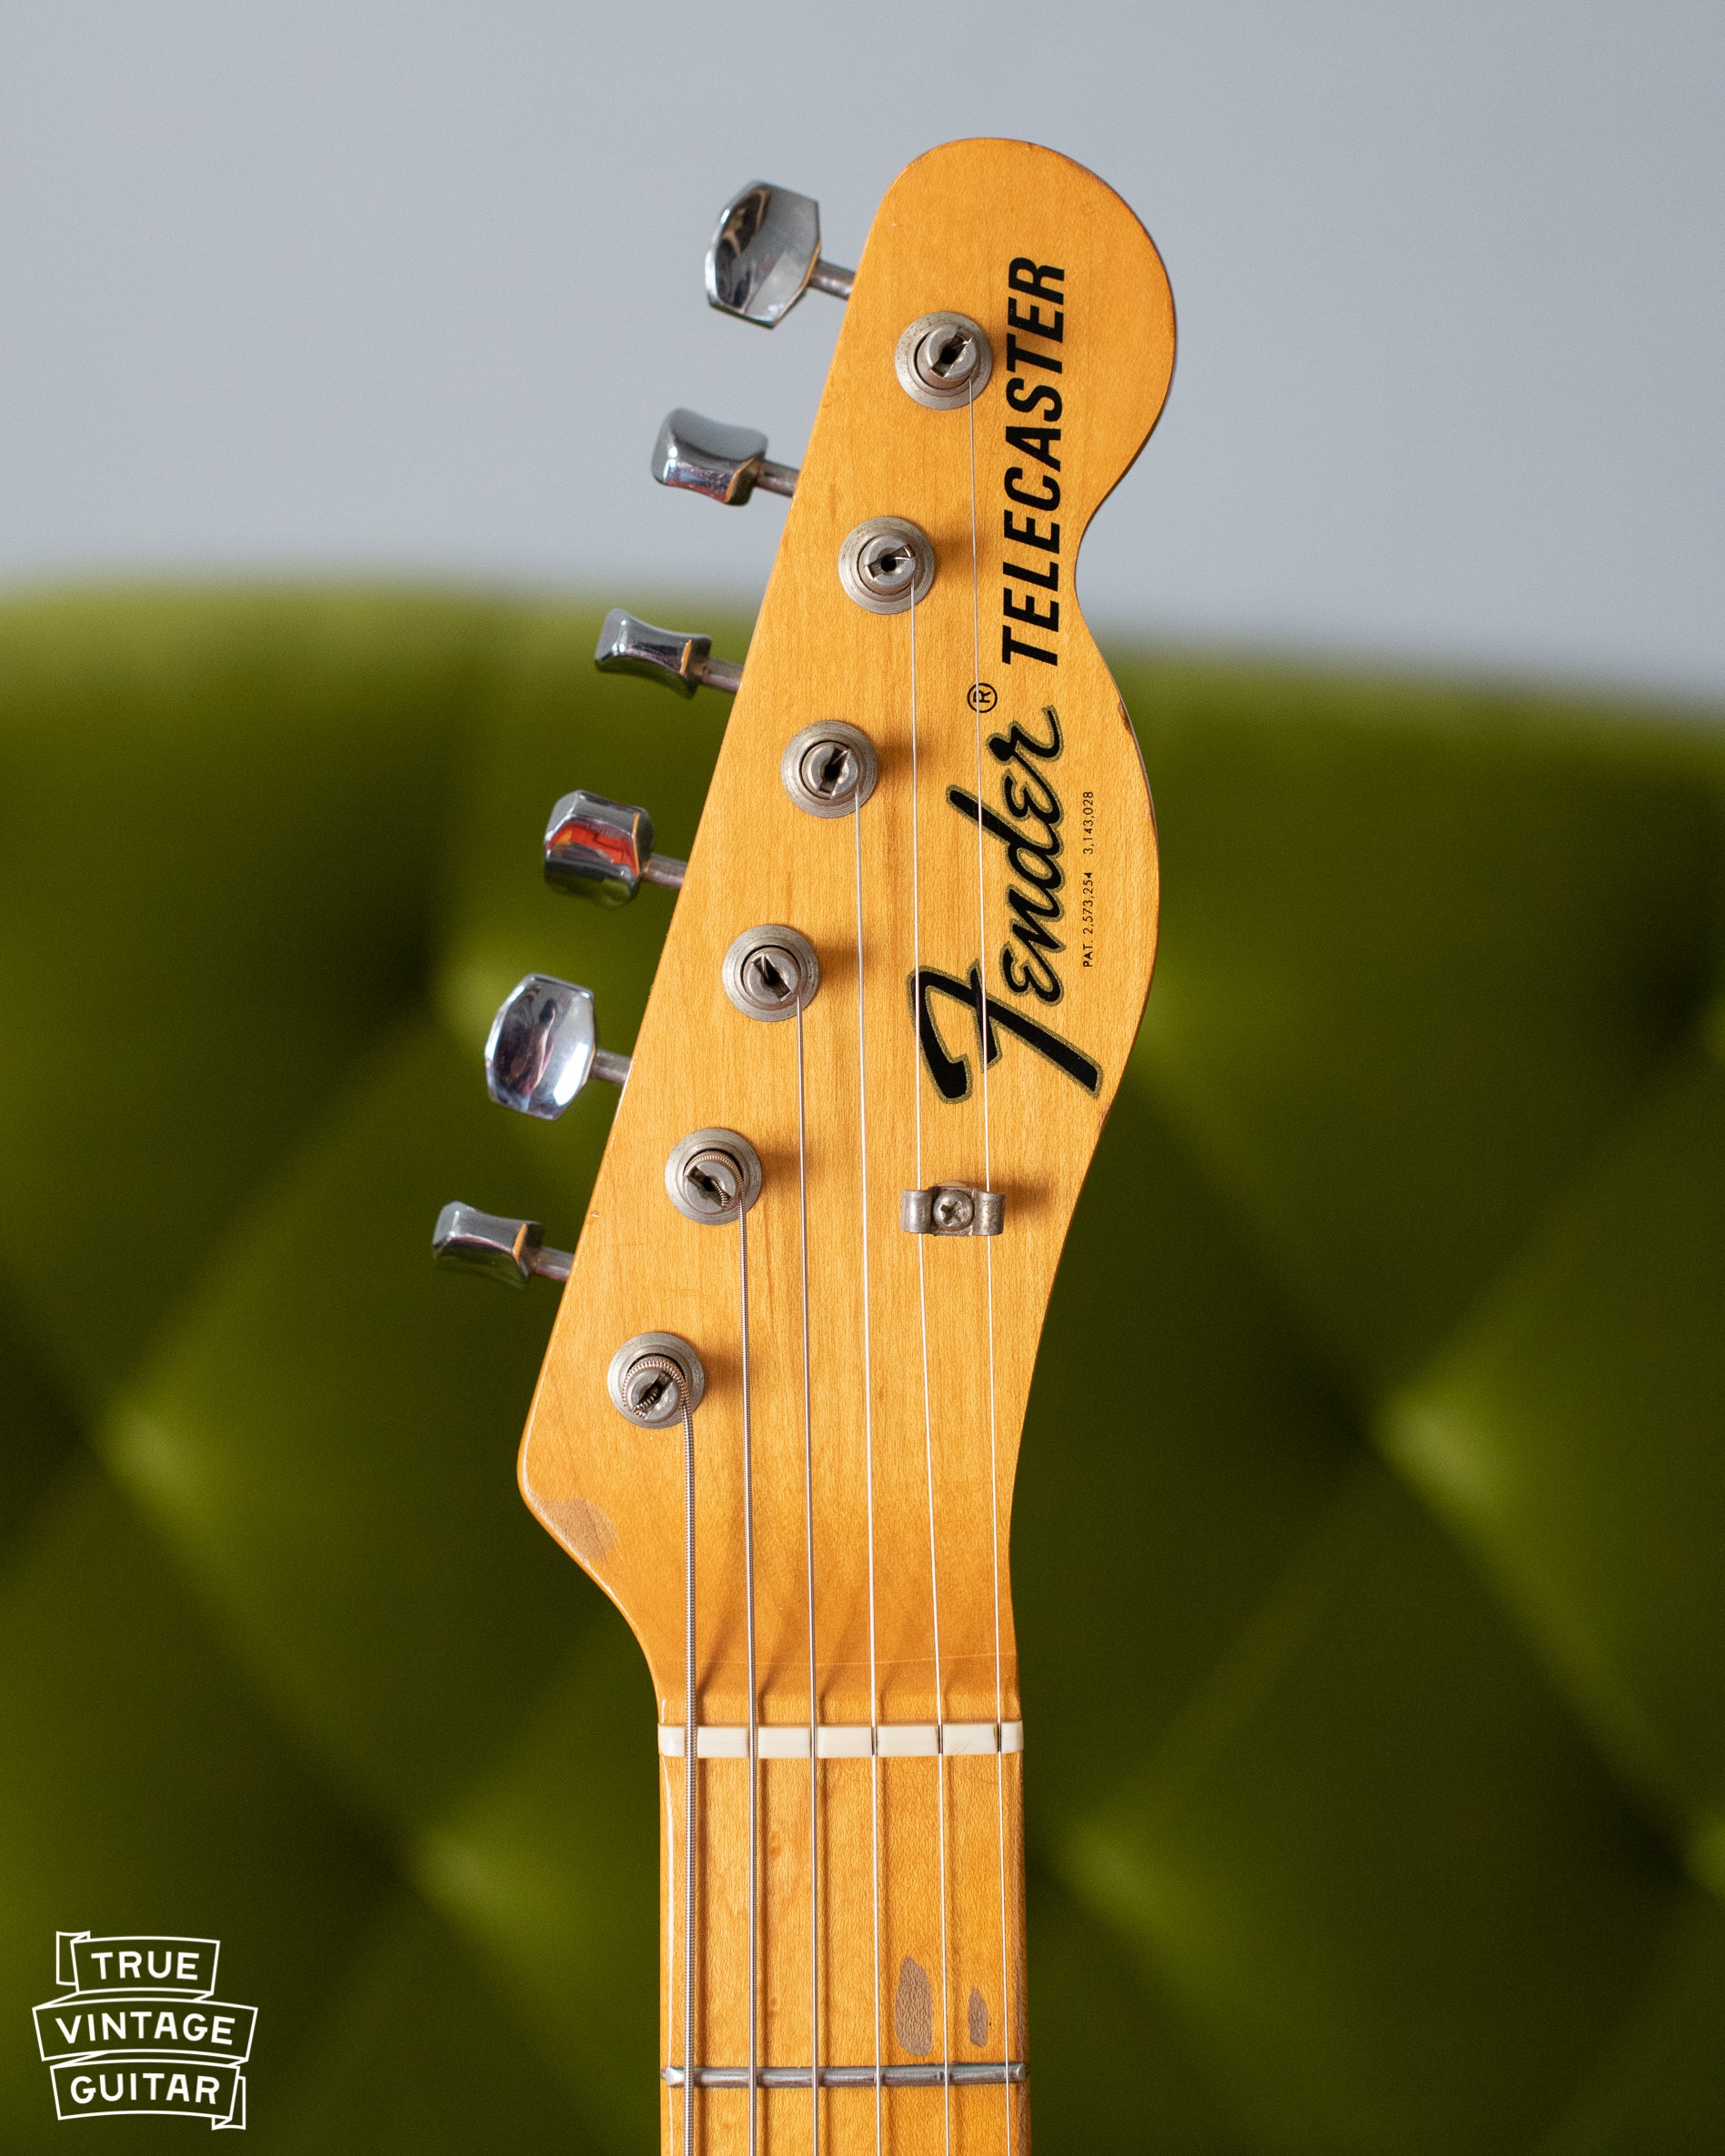 Fender Telecaster headstock 1968